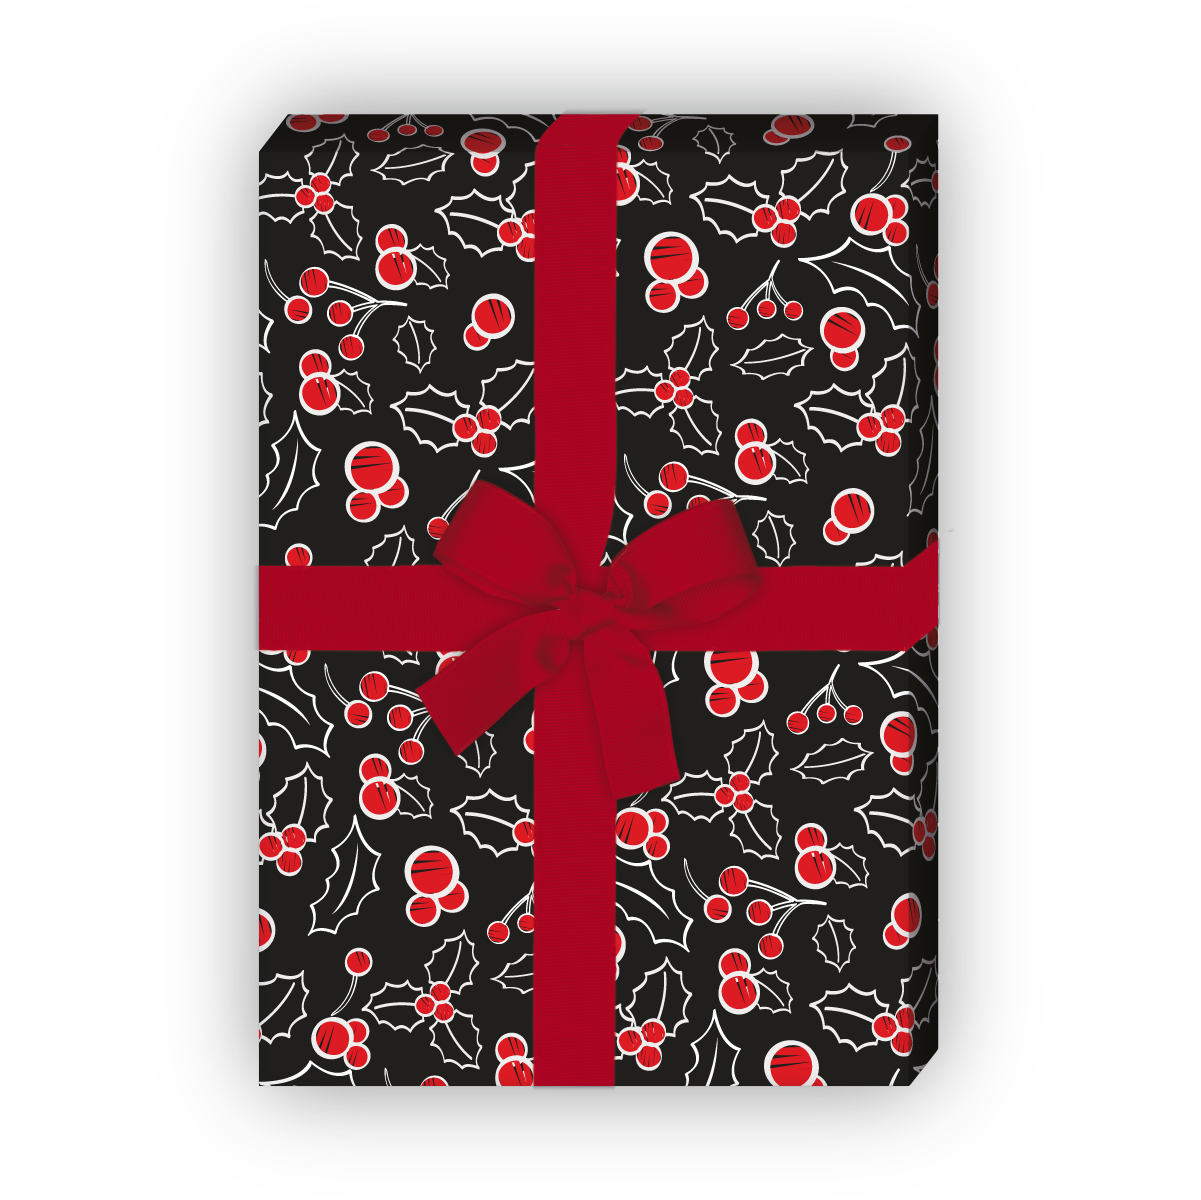 Geschenkverpackung Weihnachten: Edles Weihnachtspapier im Kreide Look mit roten Beeren, schwarz, jetzt online kaufen